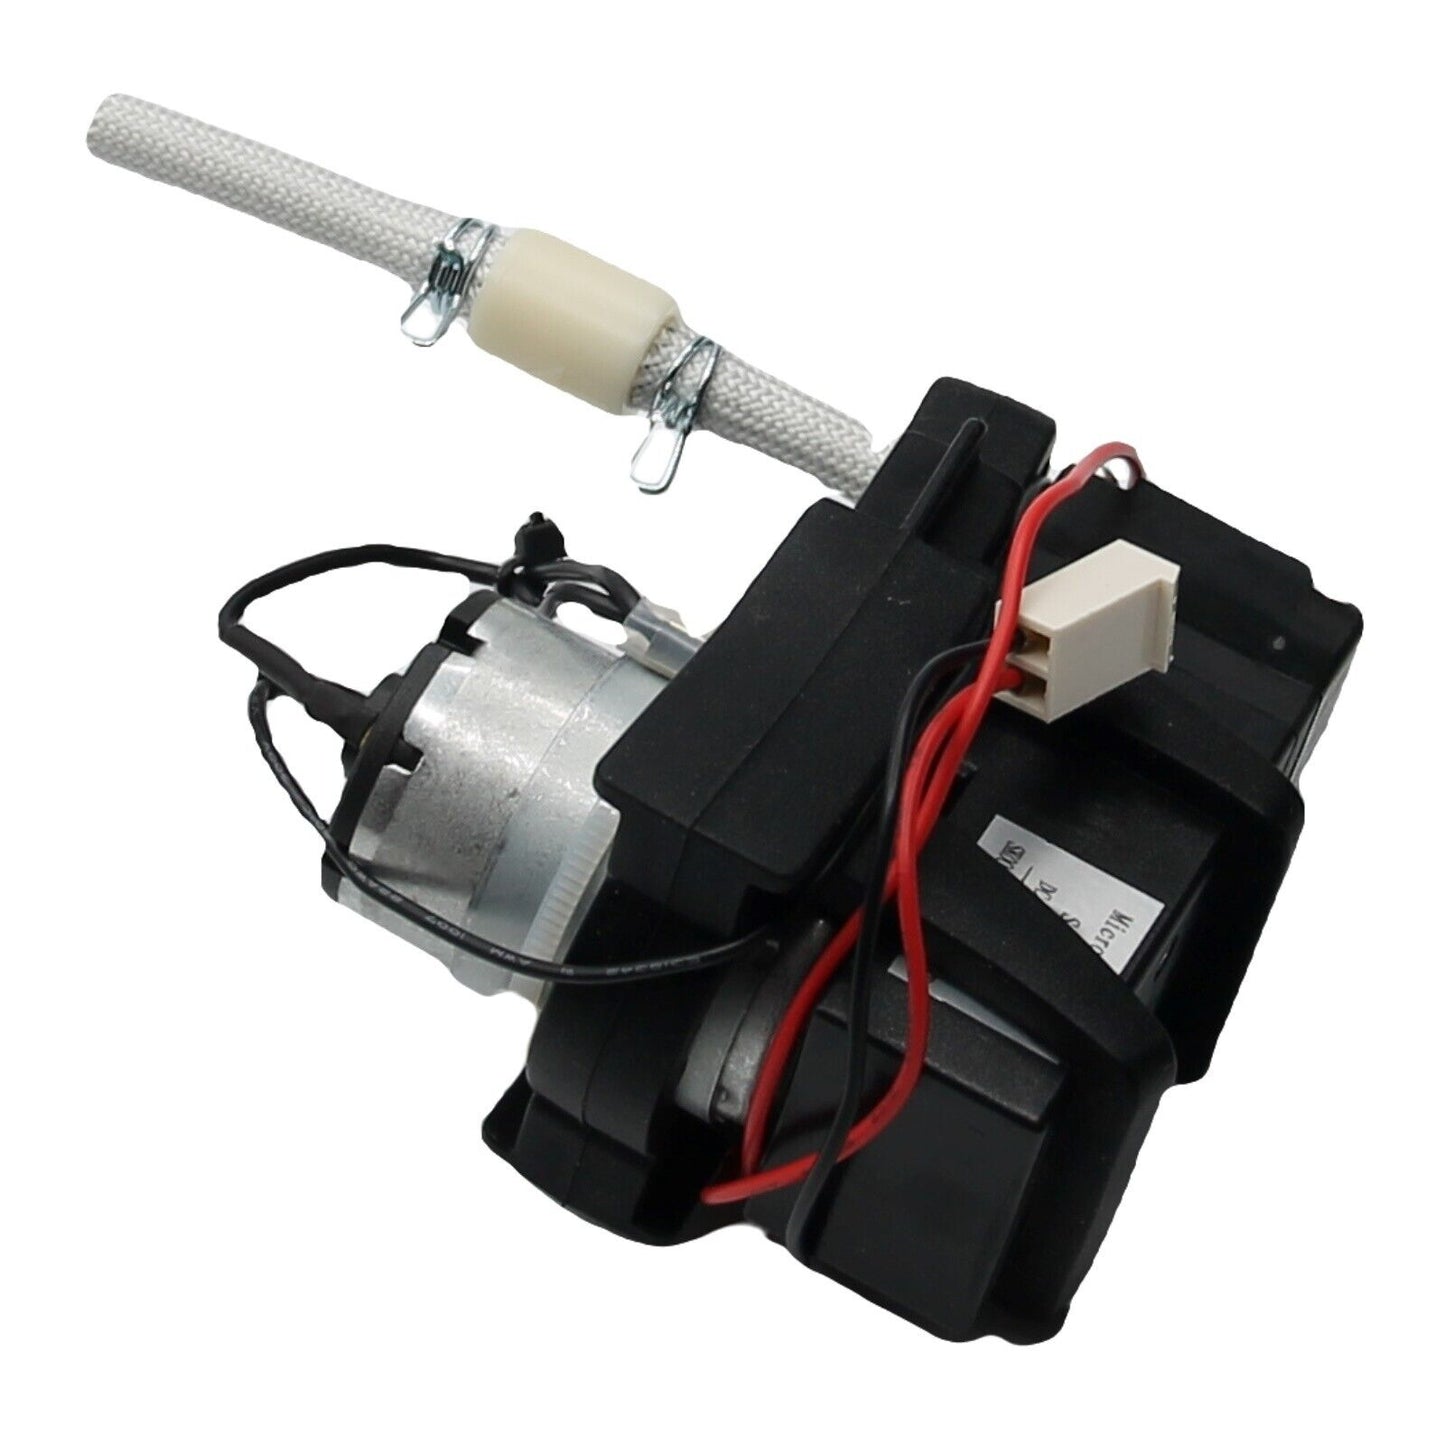 Krups pompa SC8001PM 12.5V spillatore dispenser birra VB6500 VB6508 VB650E VB650